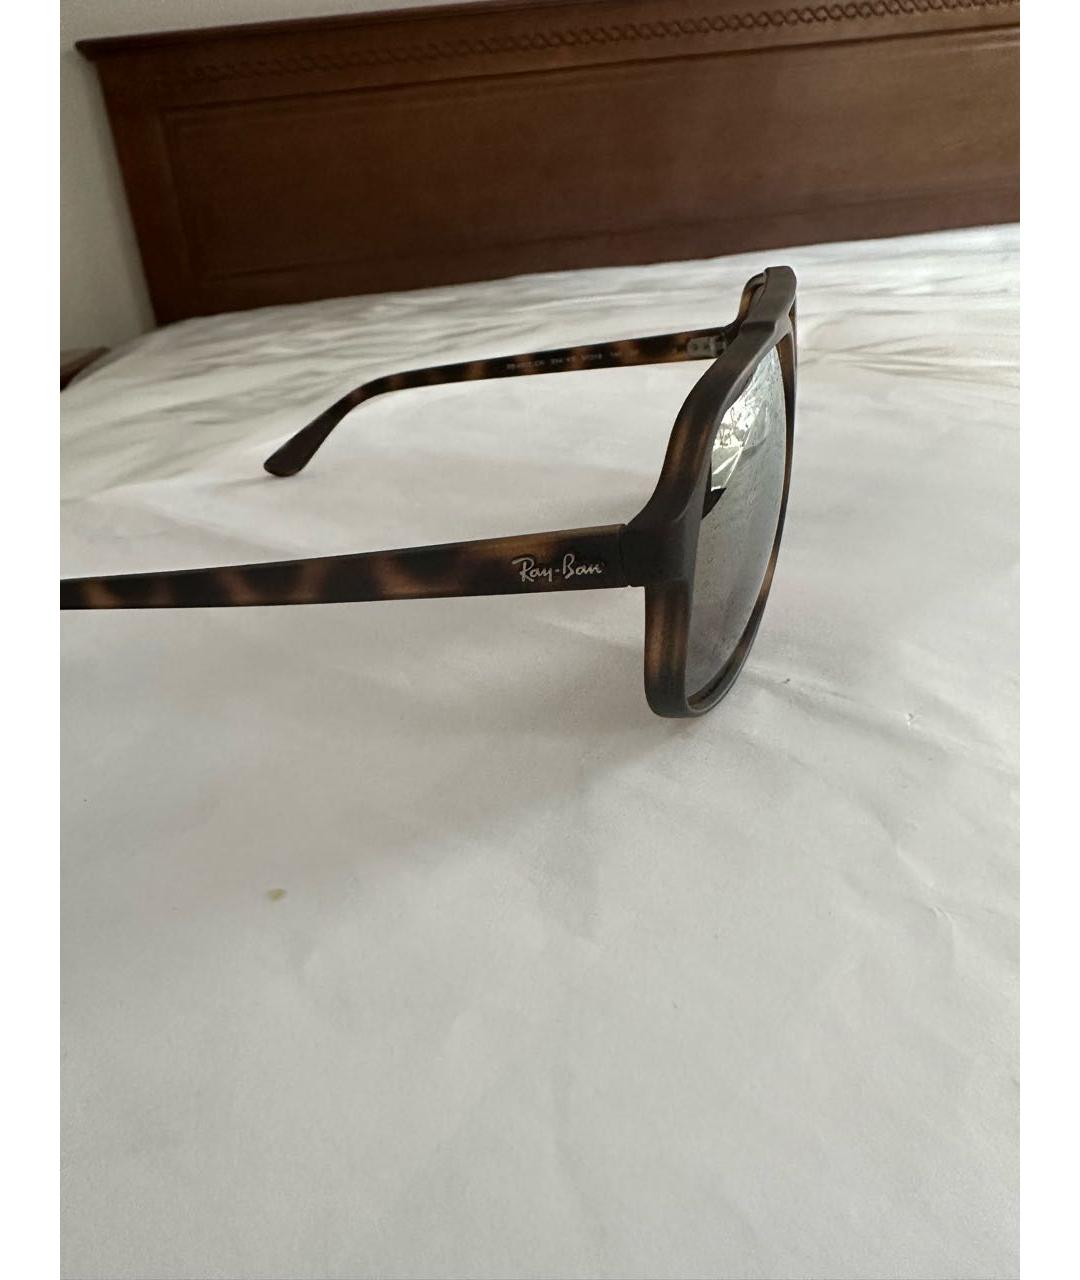 RAY BAN Коричневые пластиковые солнцезащитные очки, фото 3